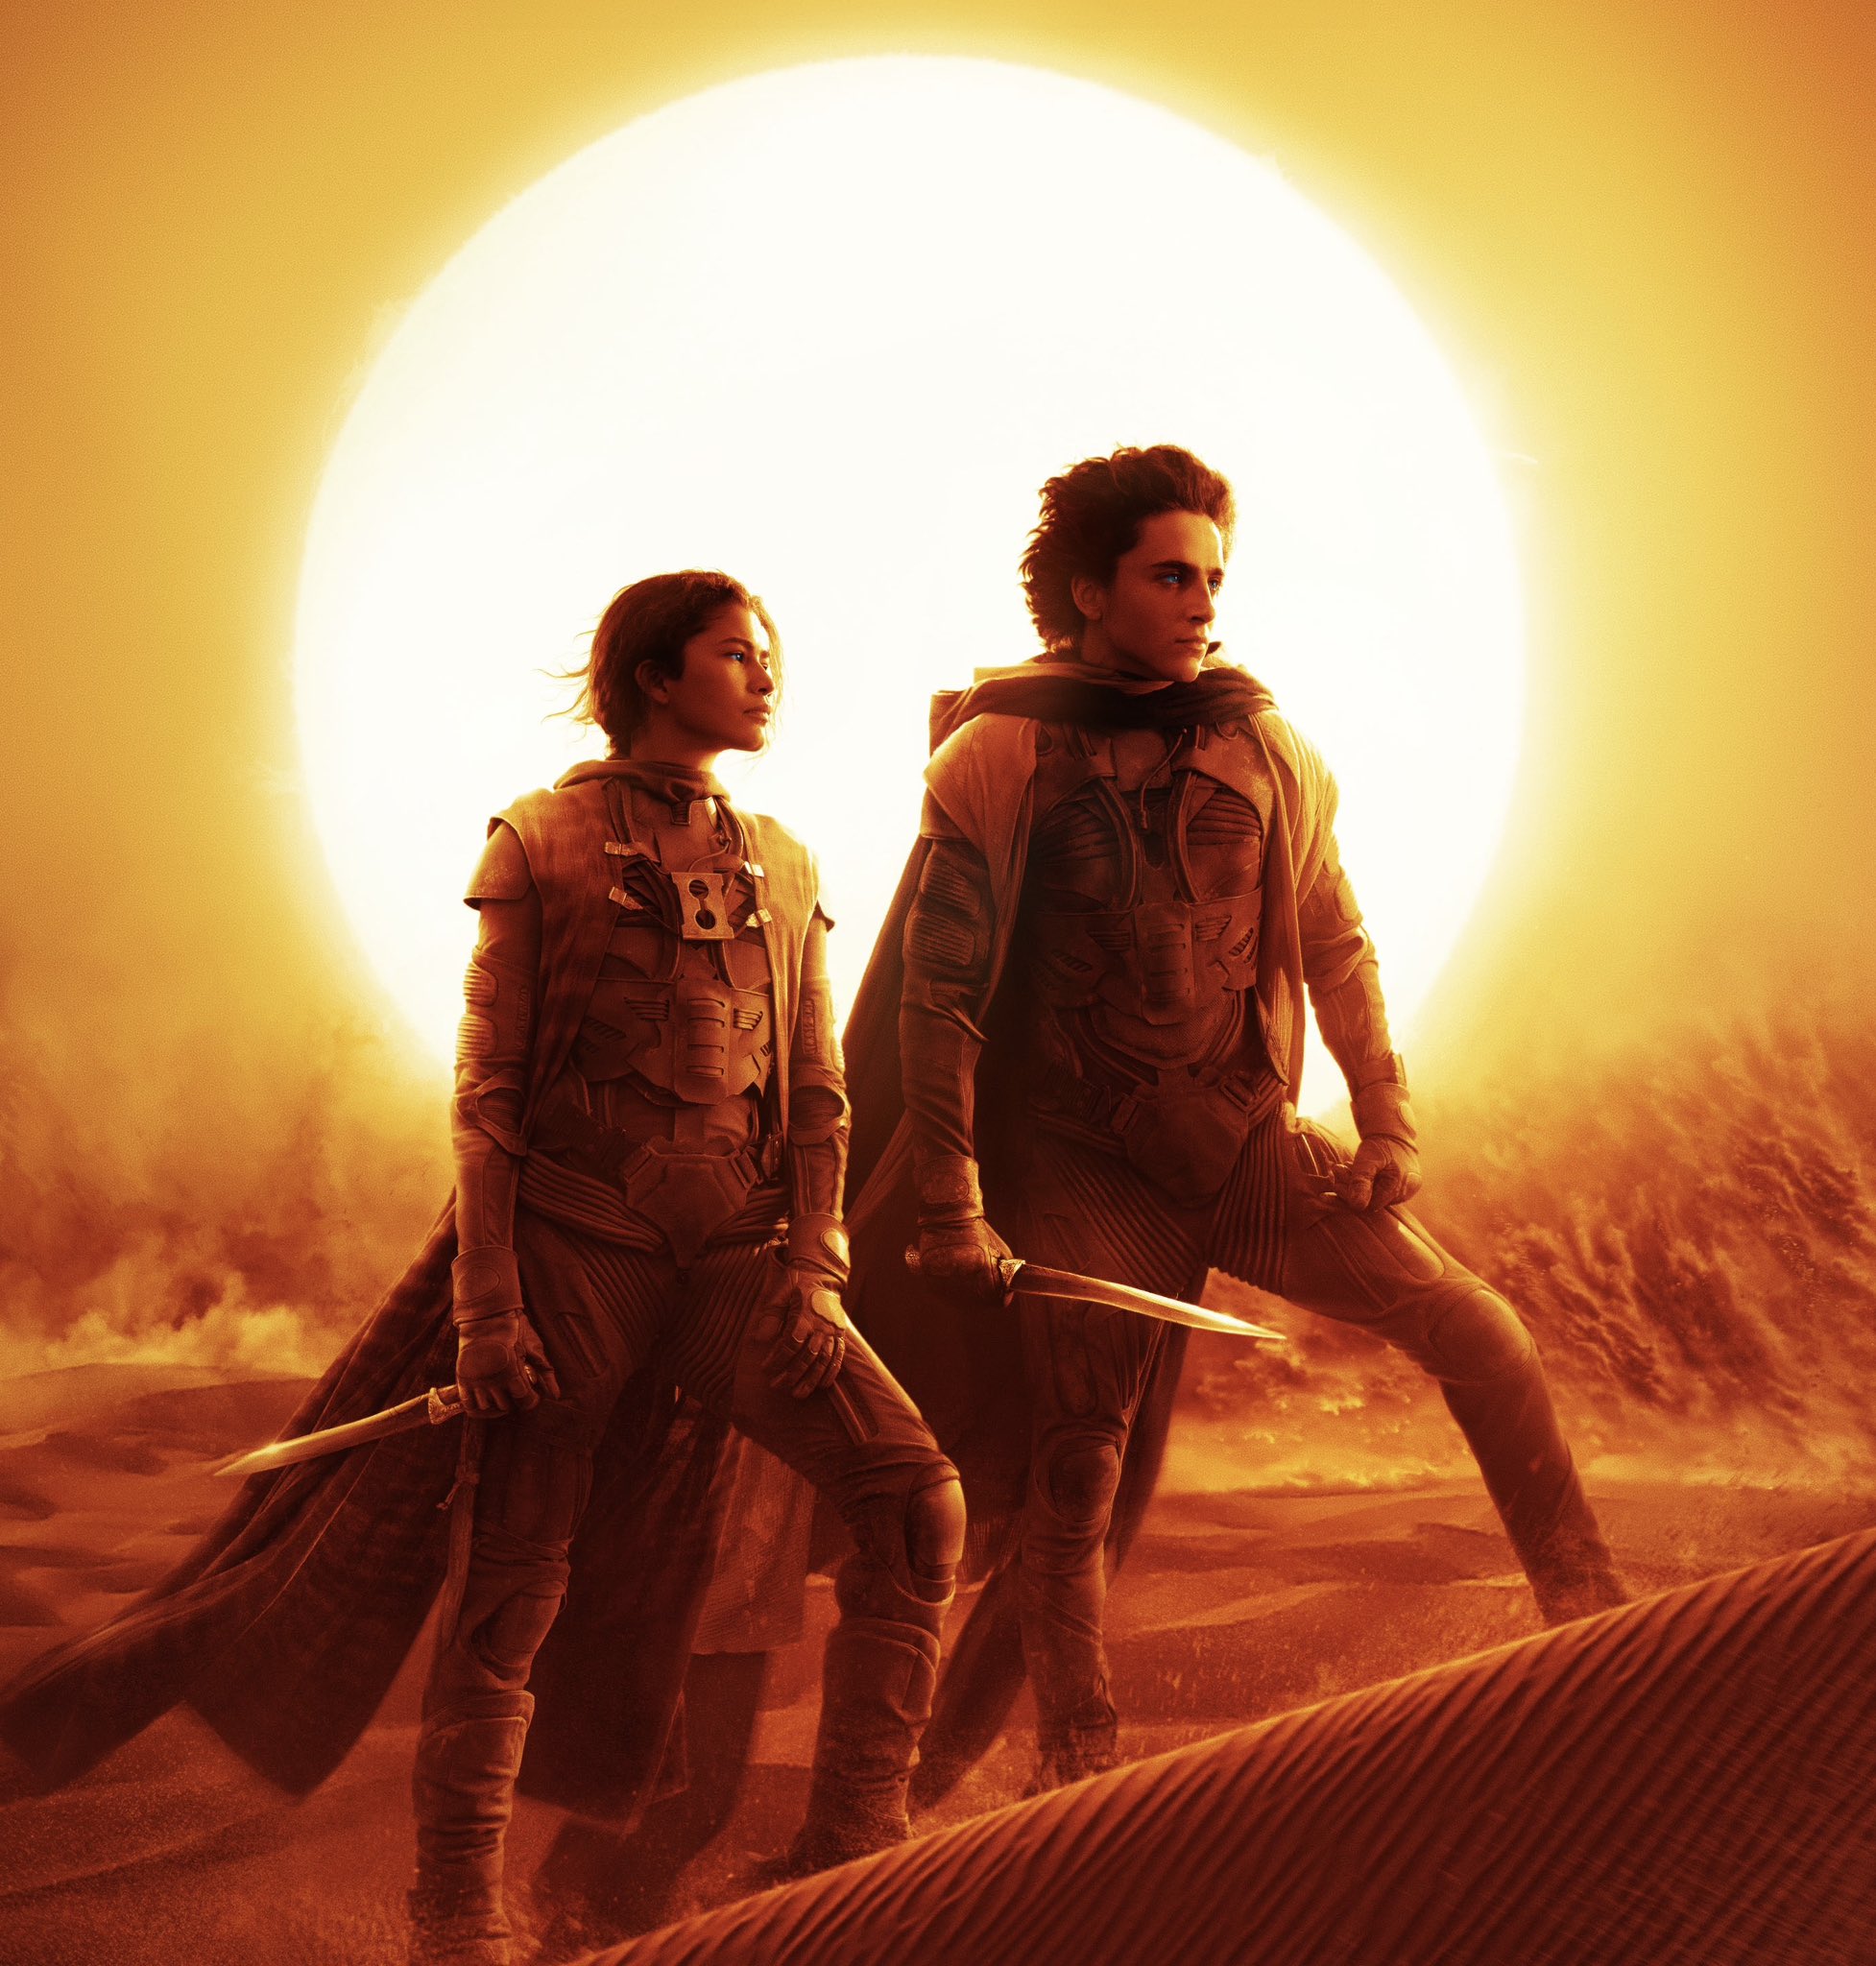 《沙丘3》将是维伦纽瓦下一部电影 2026年圣诞上映